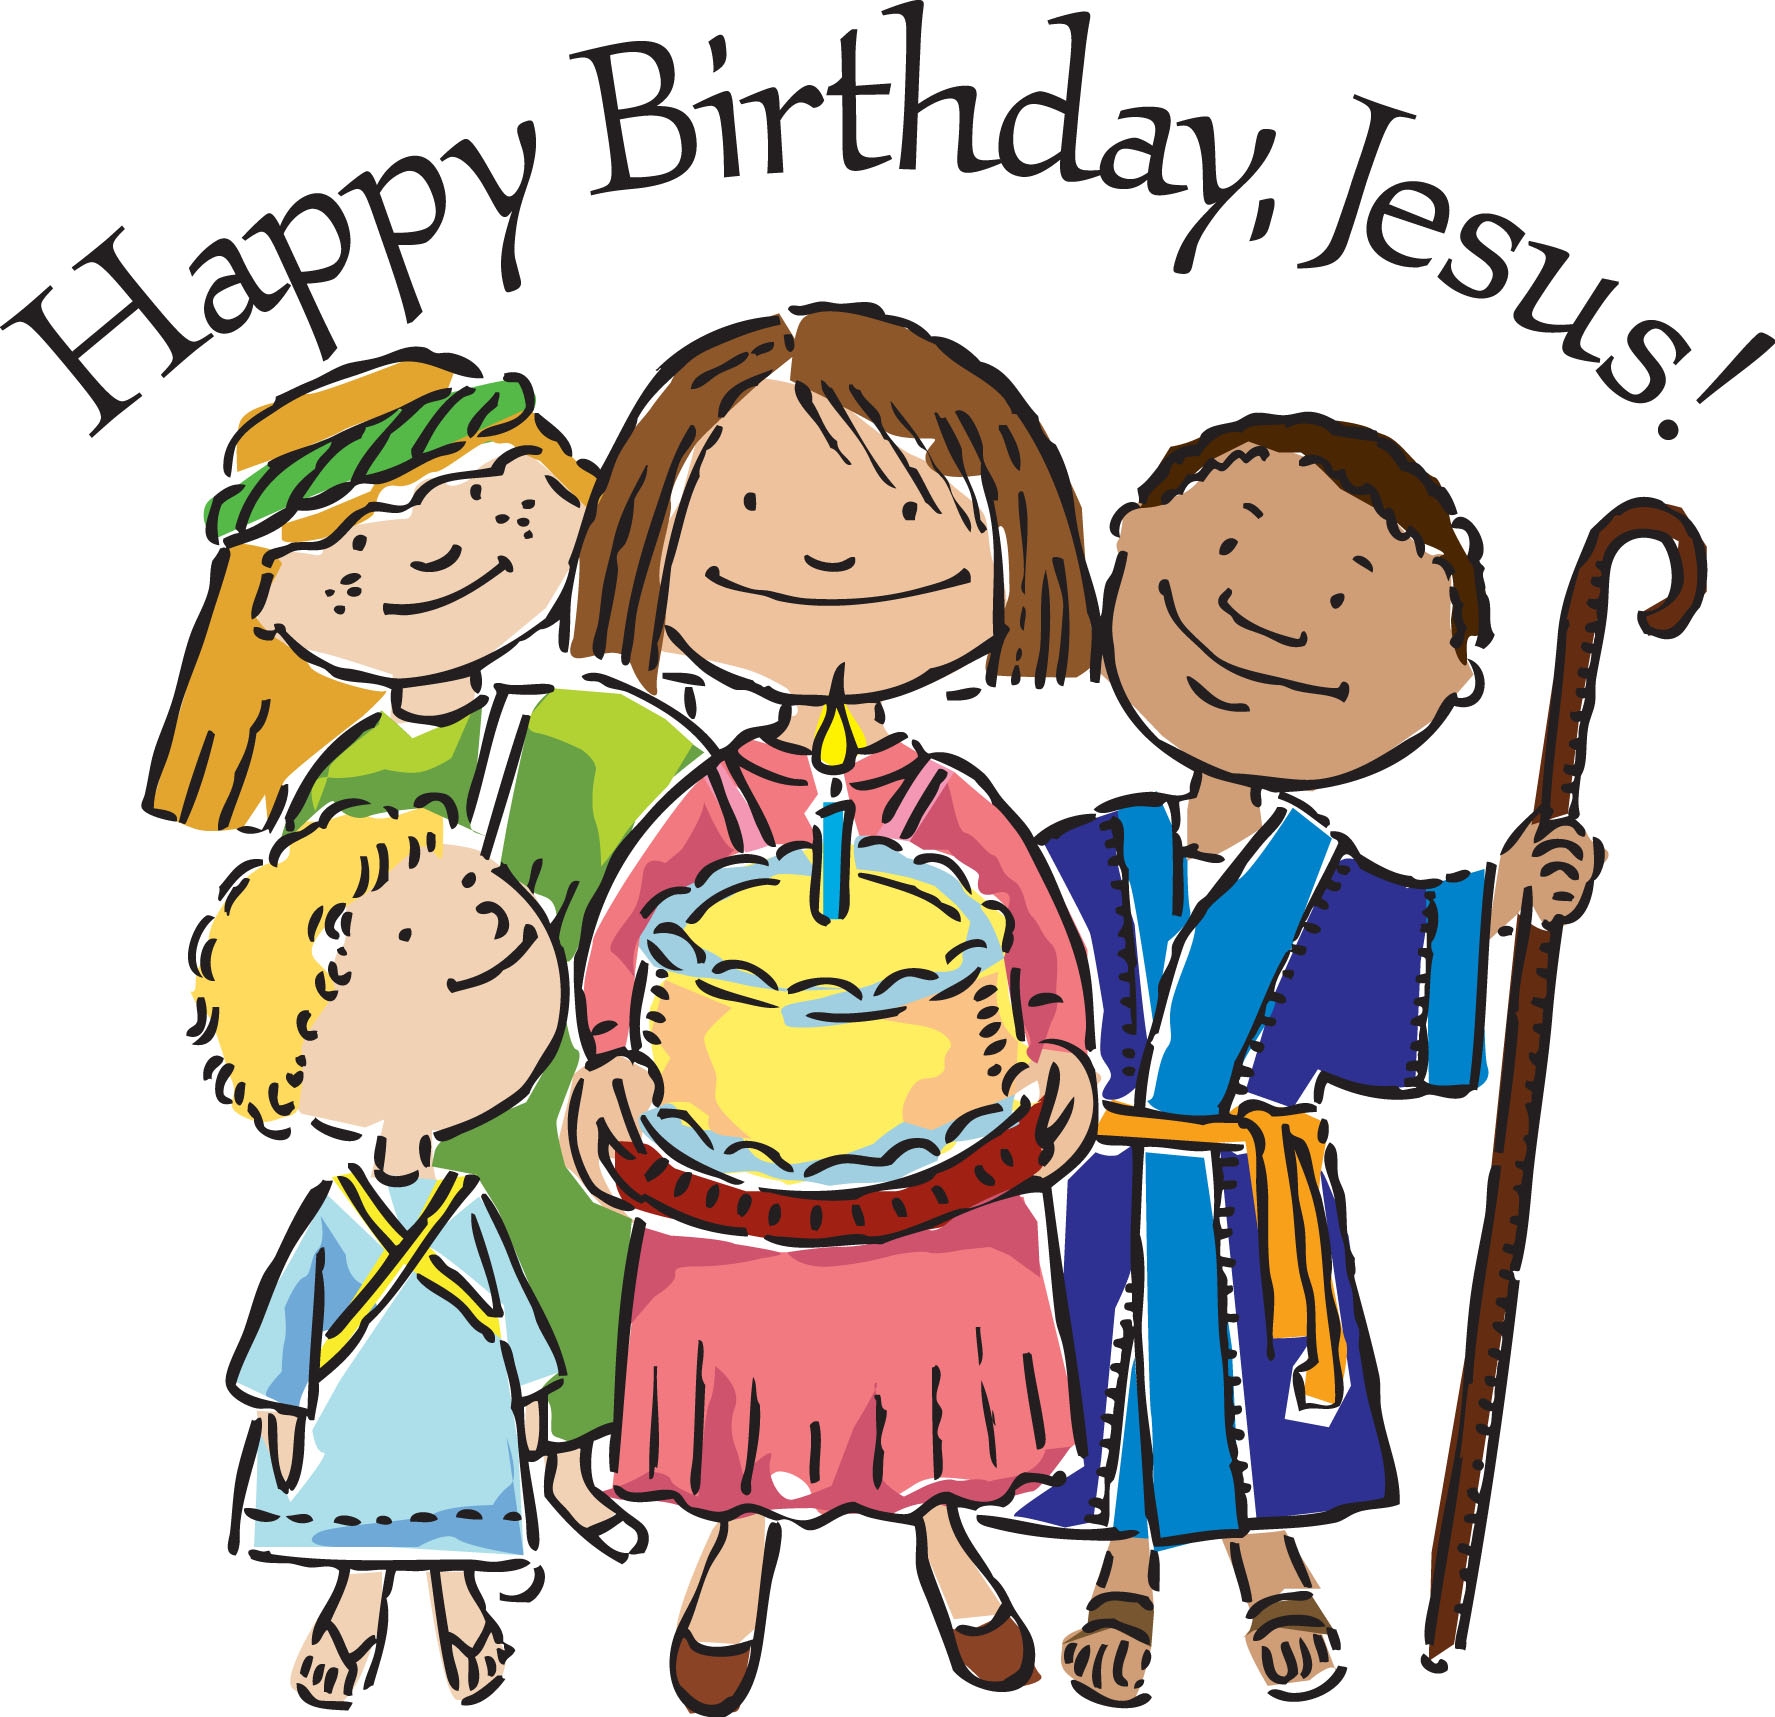 Happy Birthday Jesus Party!